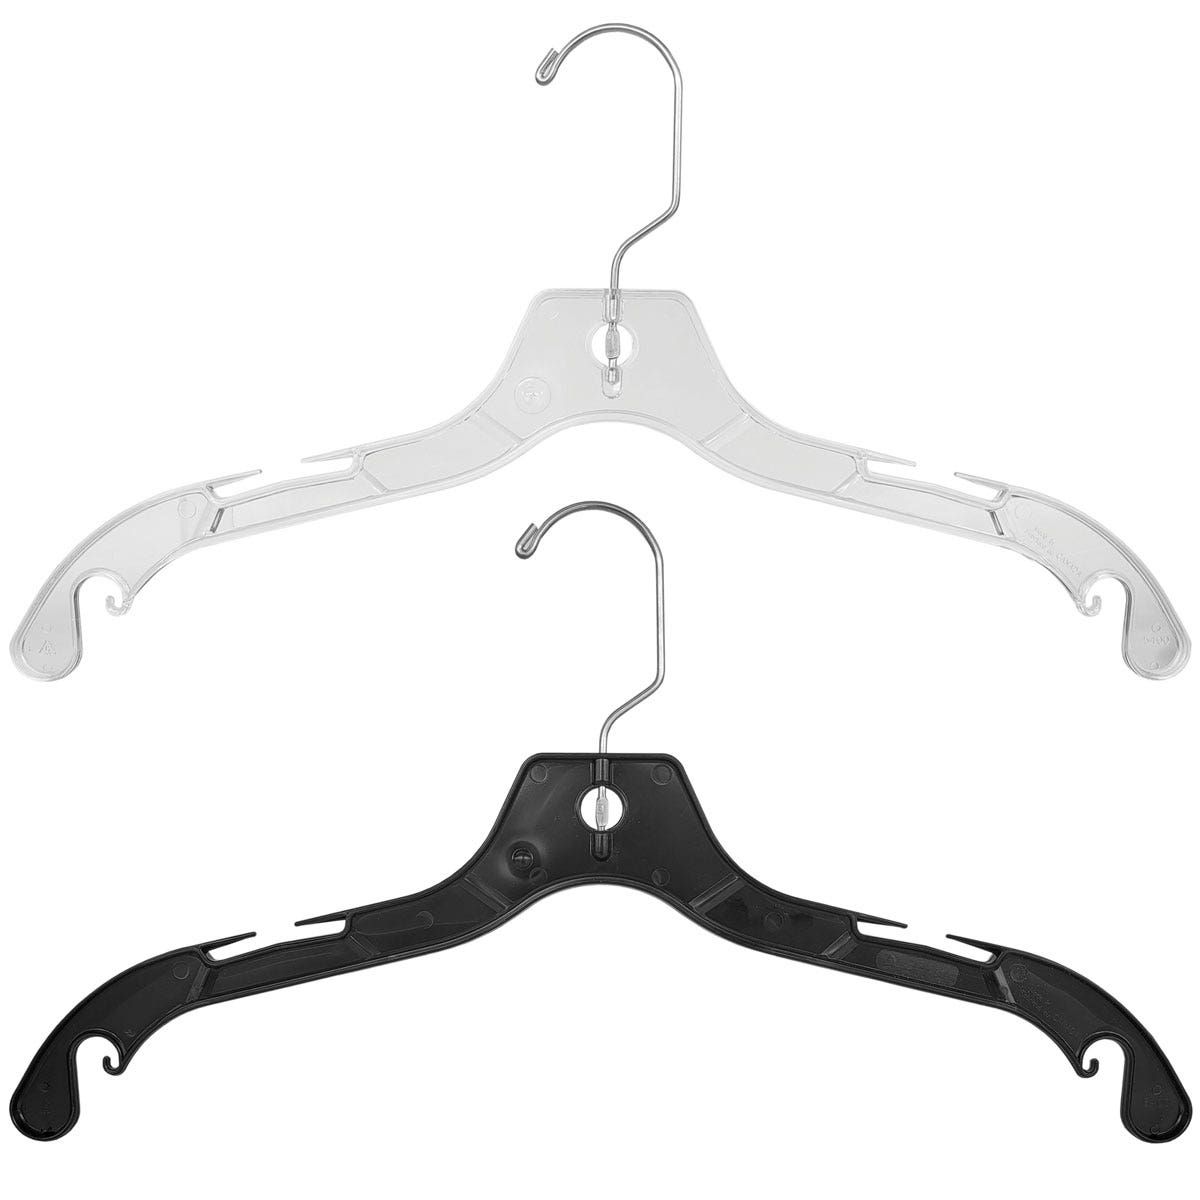 17" Medium Weight Top Hangers | 100 Pack - Eddie's Hang-Up Display Ltd.